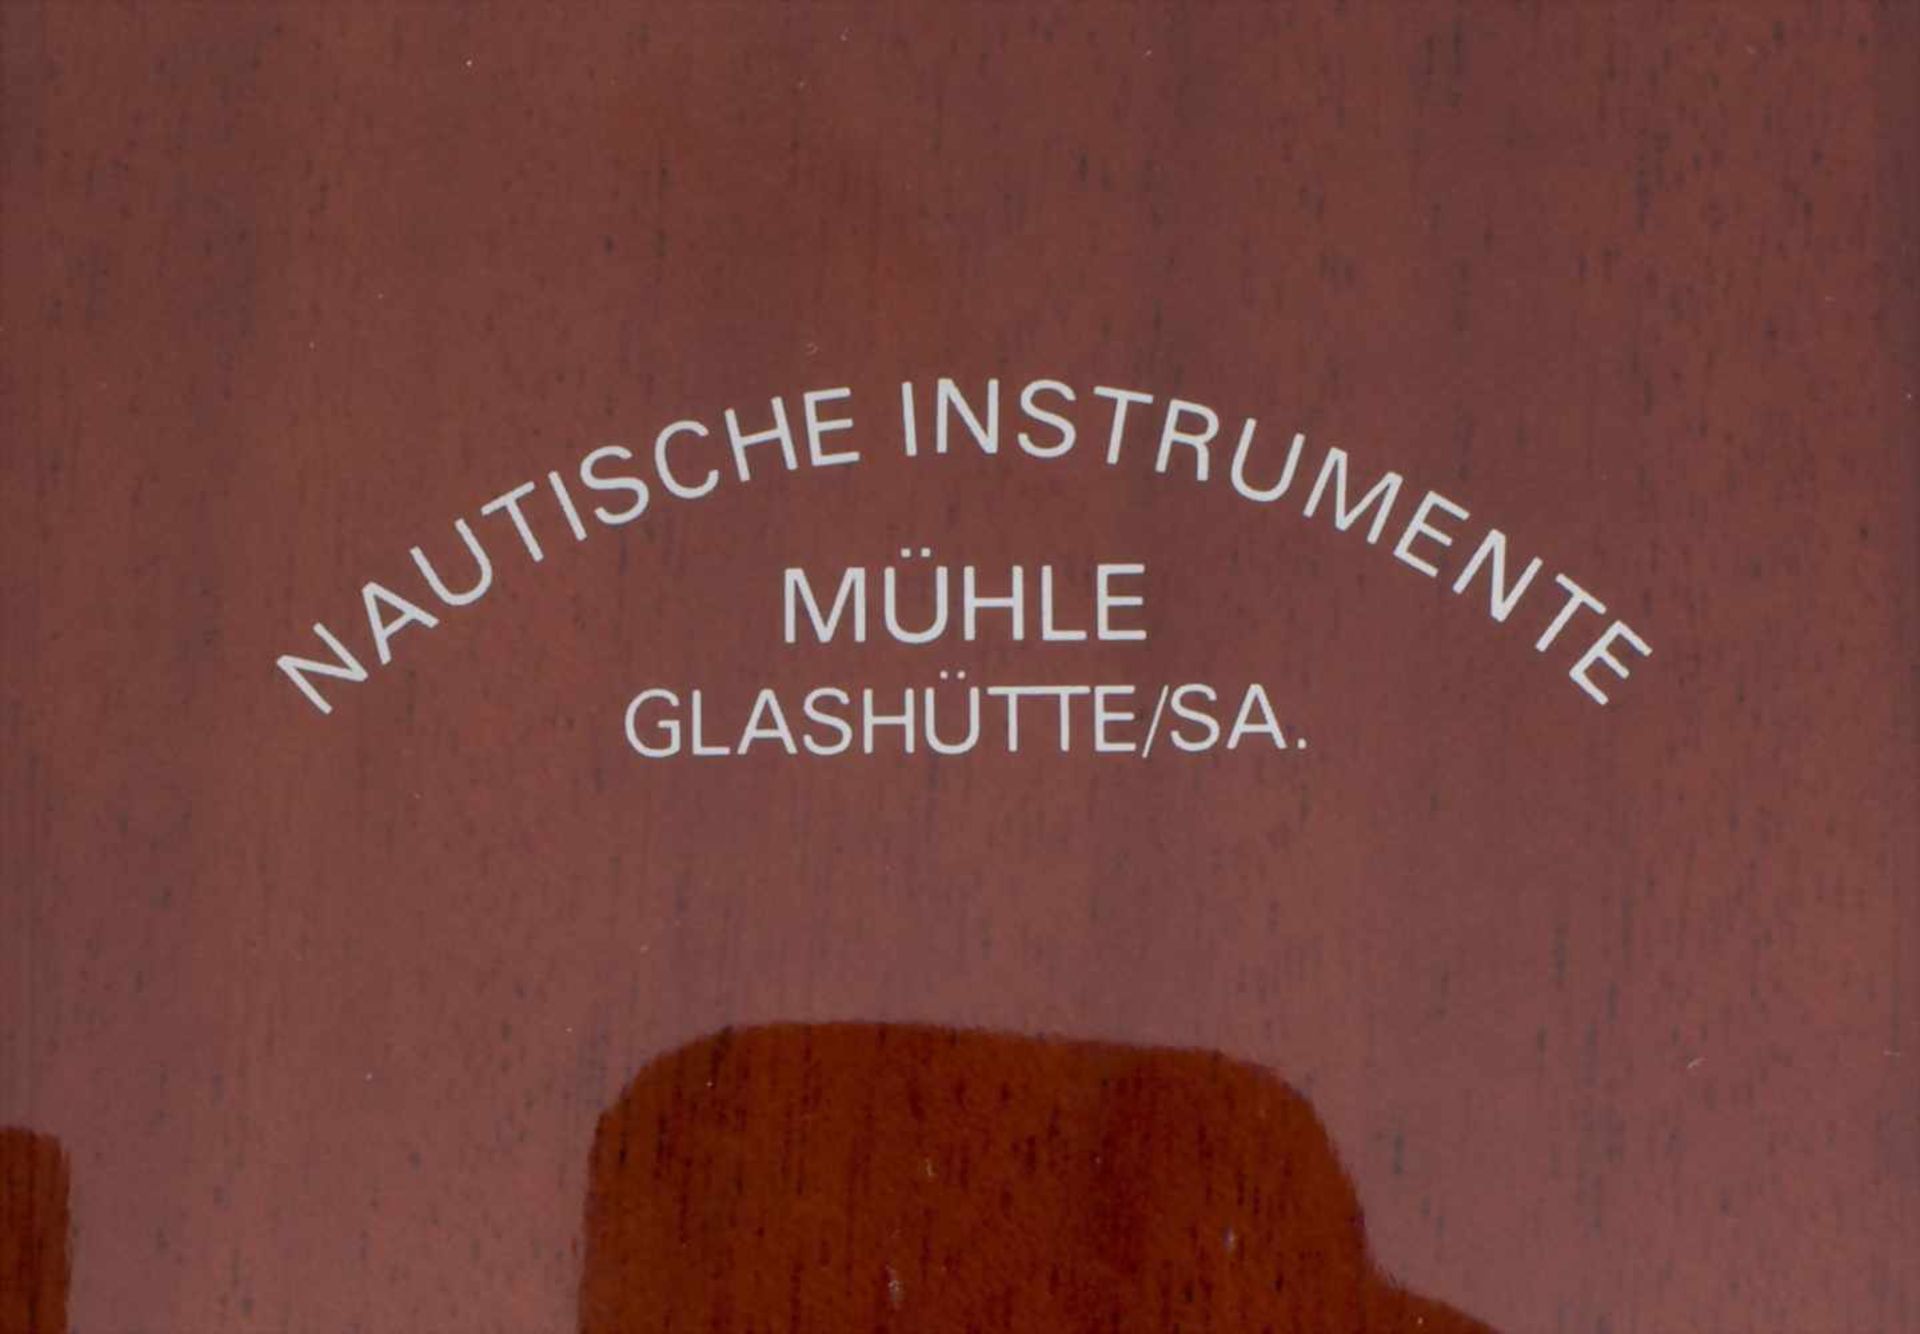 Nautische Instrumente Mühle, Glashütte i. Sachsen, 2011Gehäuse: Stainless Steel mit Glas/ - Image 4 of 4